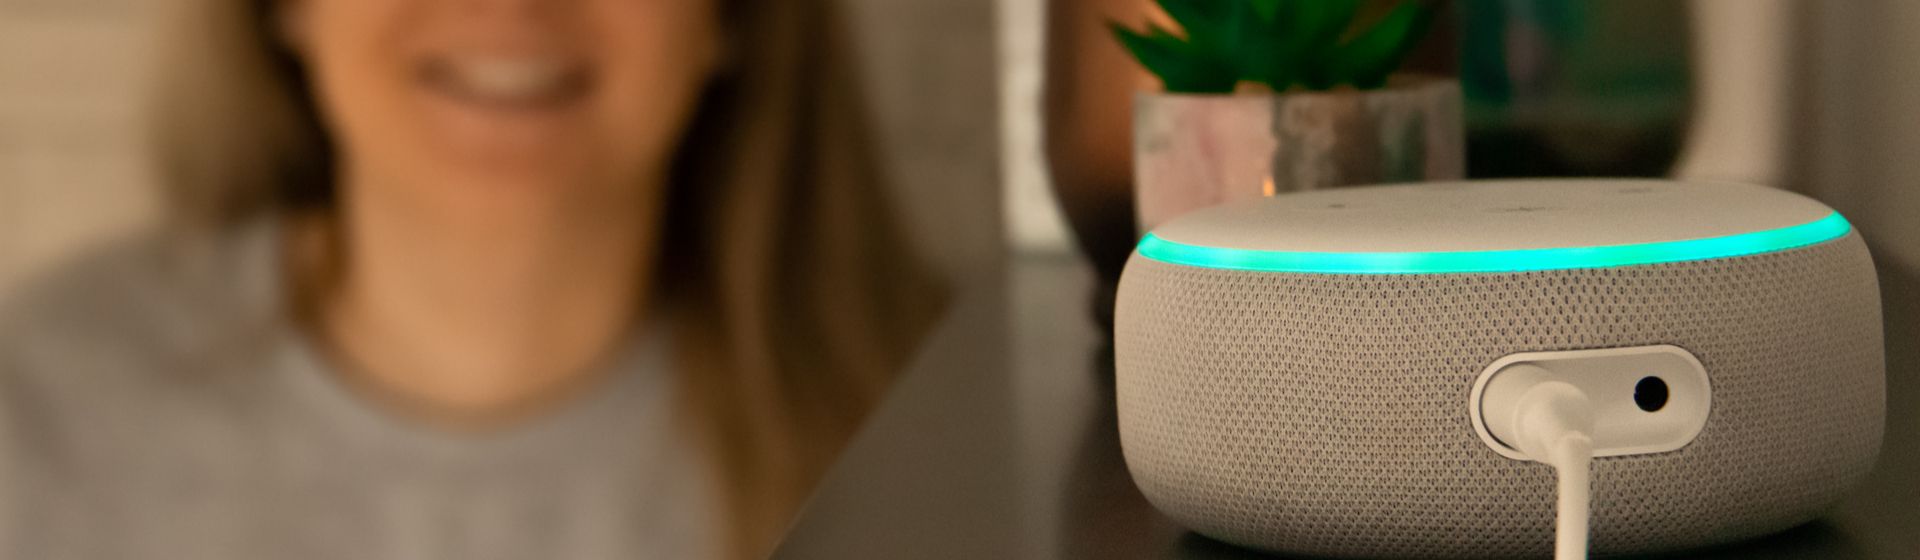 Alexa Smart sua casa com Inteligência Artificial - Alexa Smart